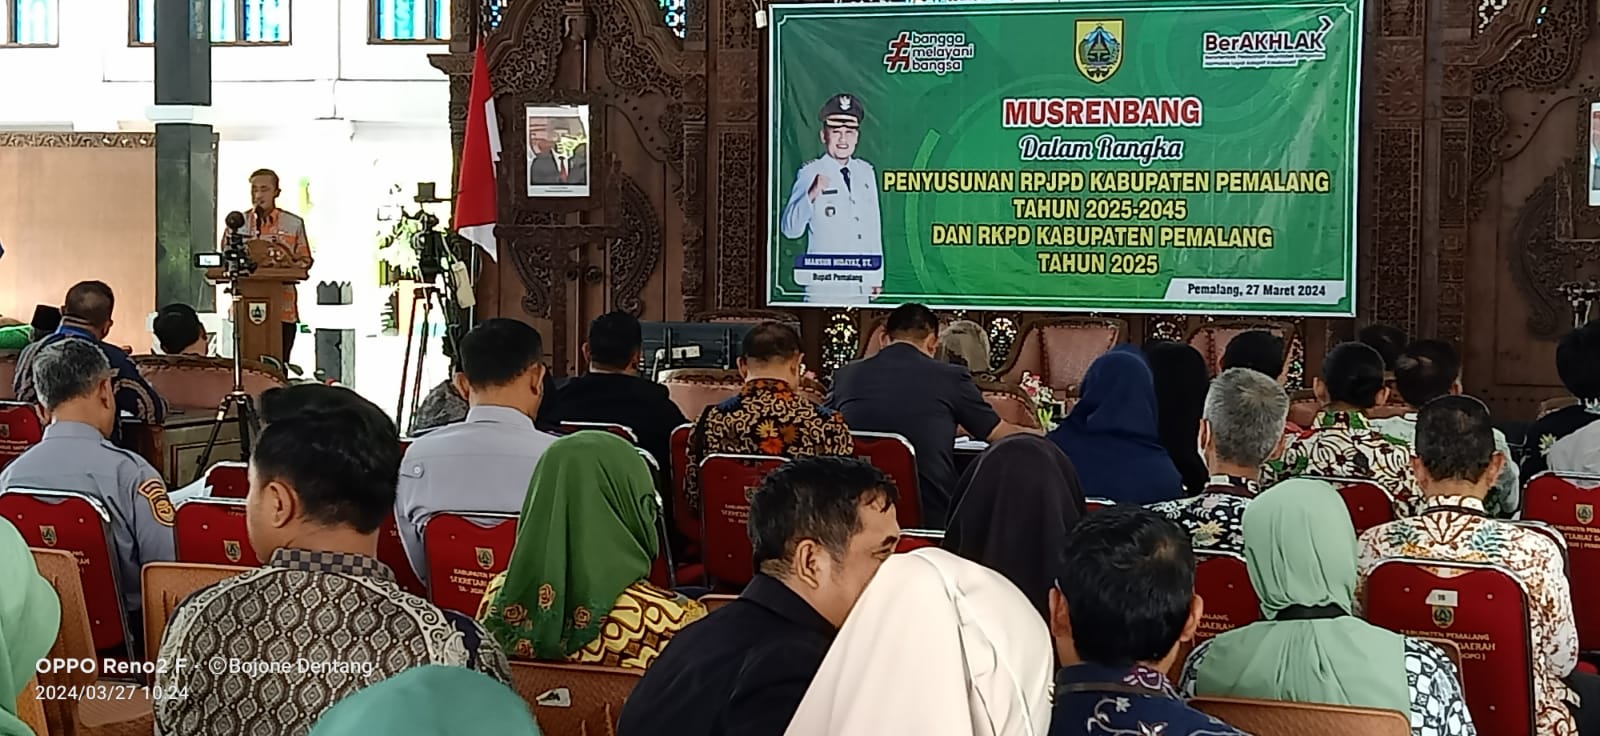 Penyusunan RPJPD 2025_2045 Dan RKPD 2025 Melalui Musrenbang Kabupaten Pemalang